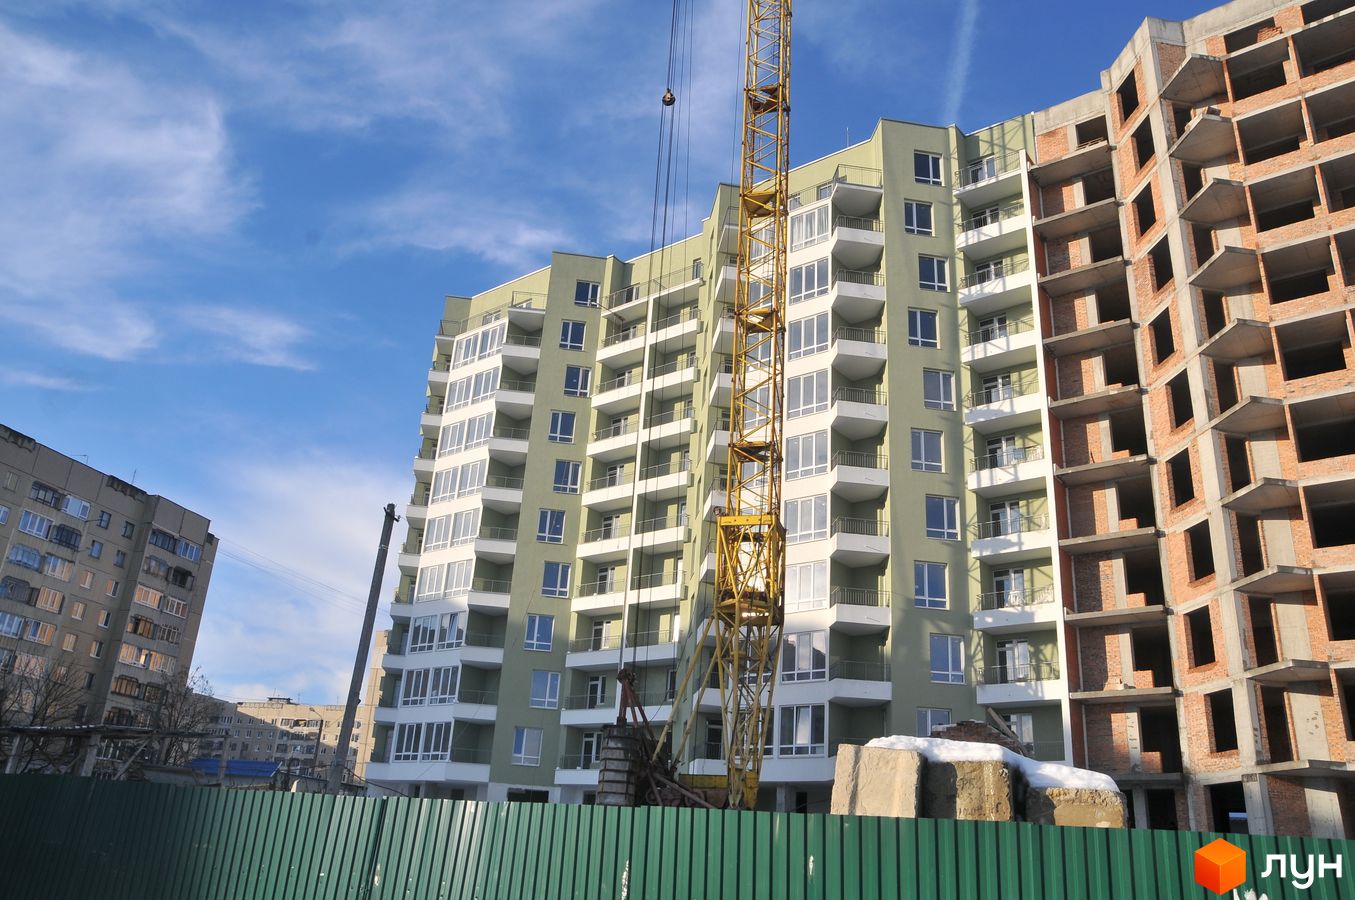 Моніторинг будівництва ЖК Сихівська околиця - Ракурс 1, січень 2019